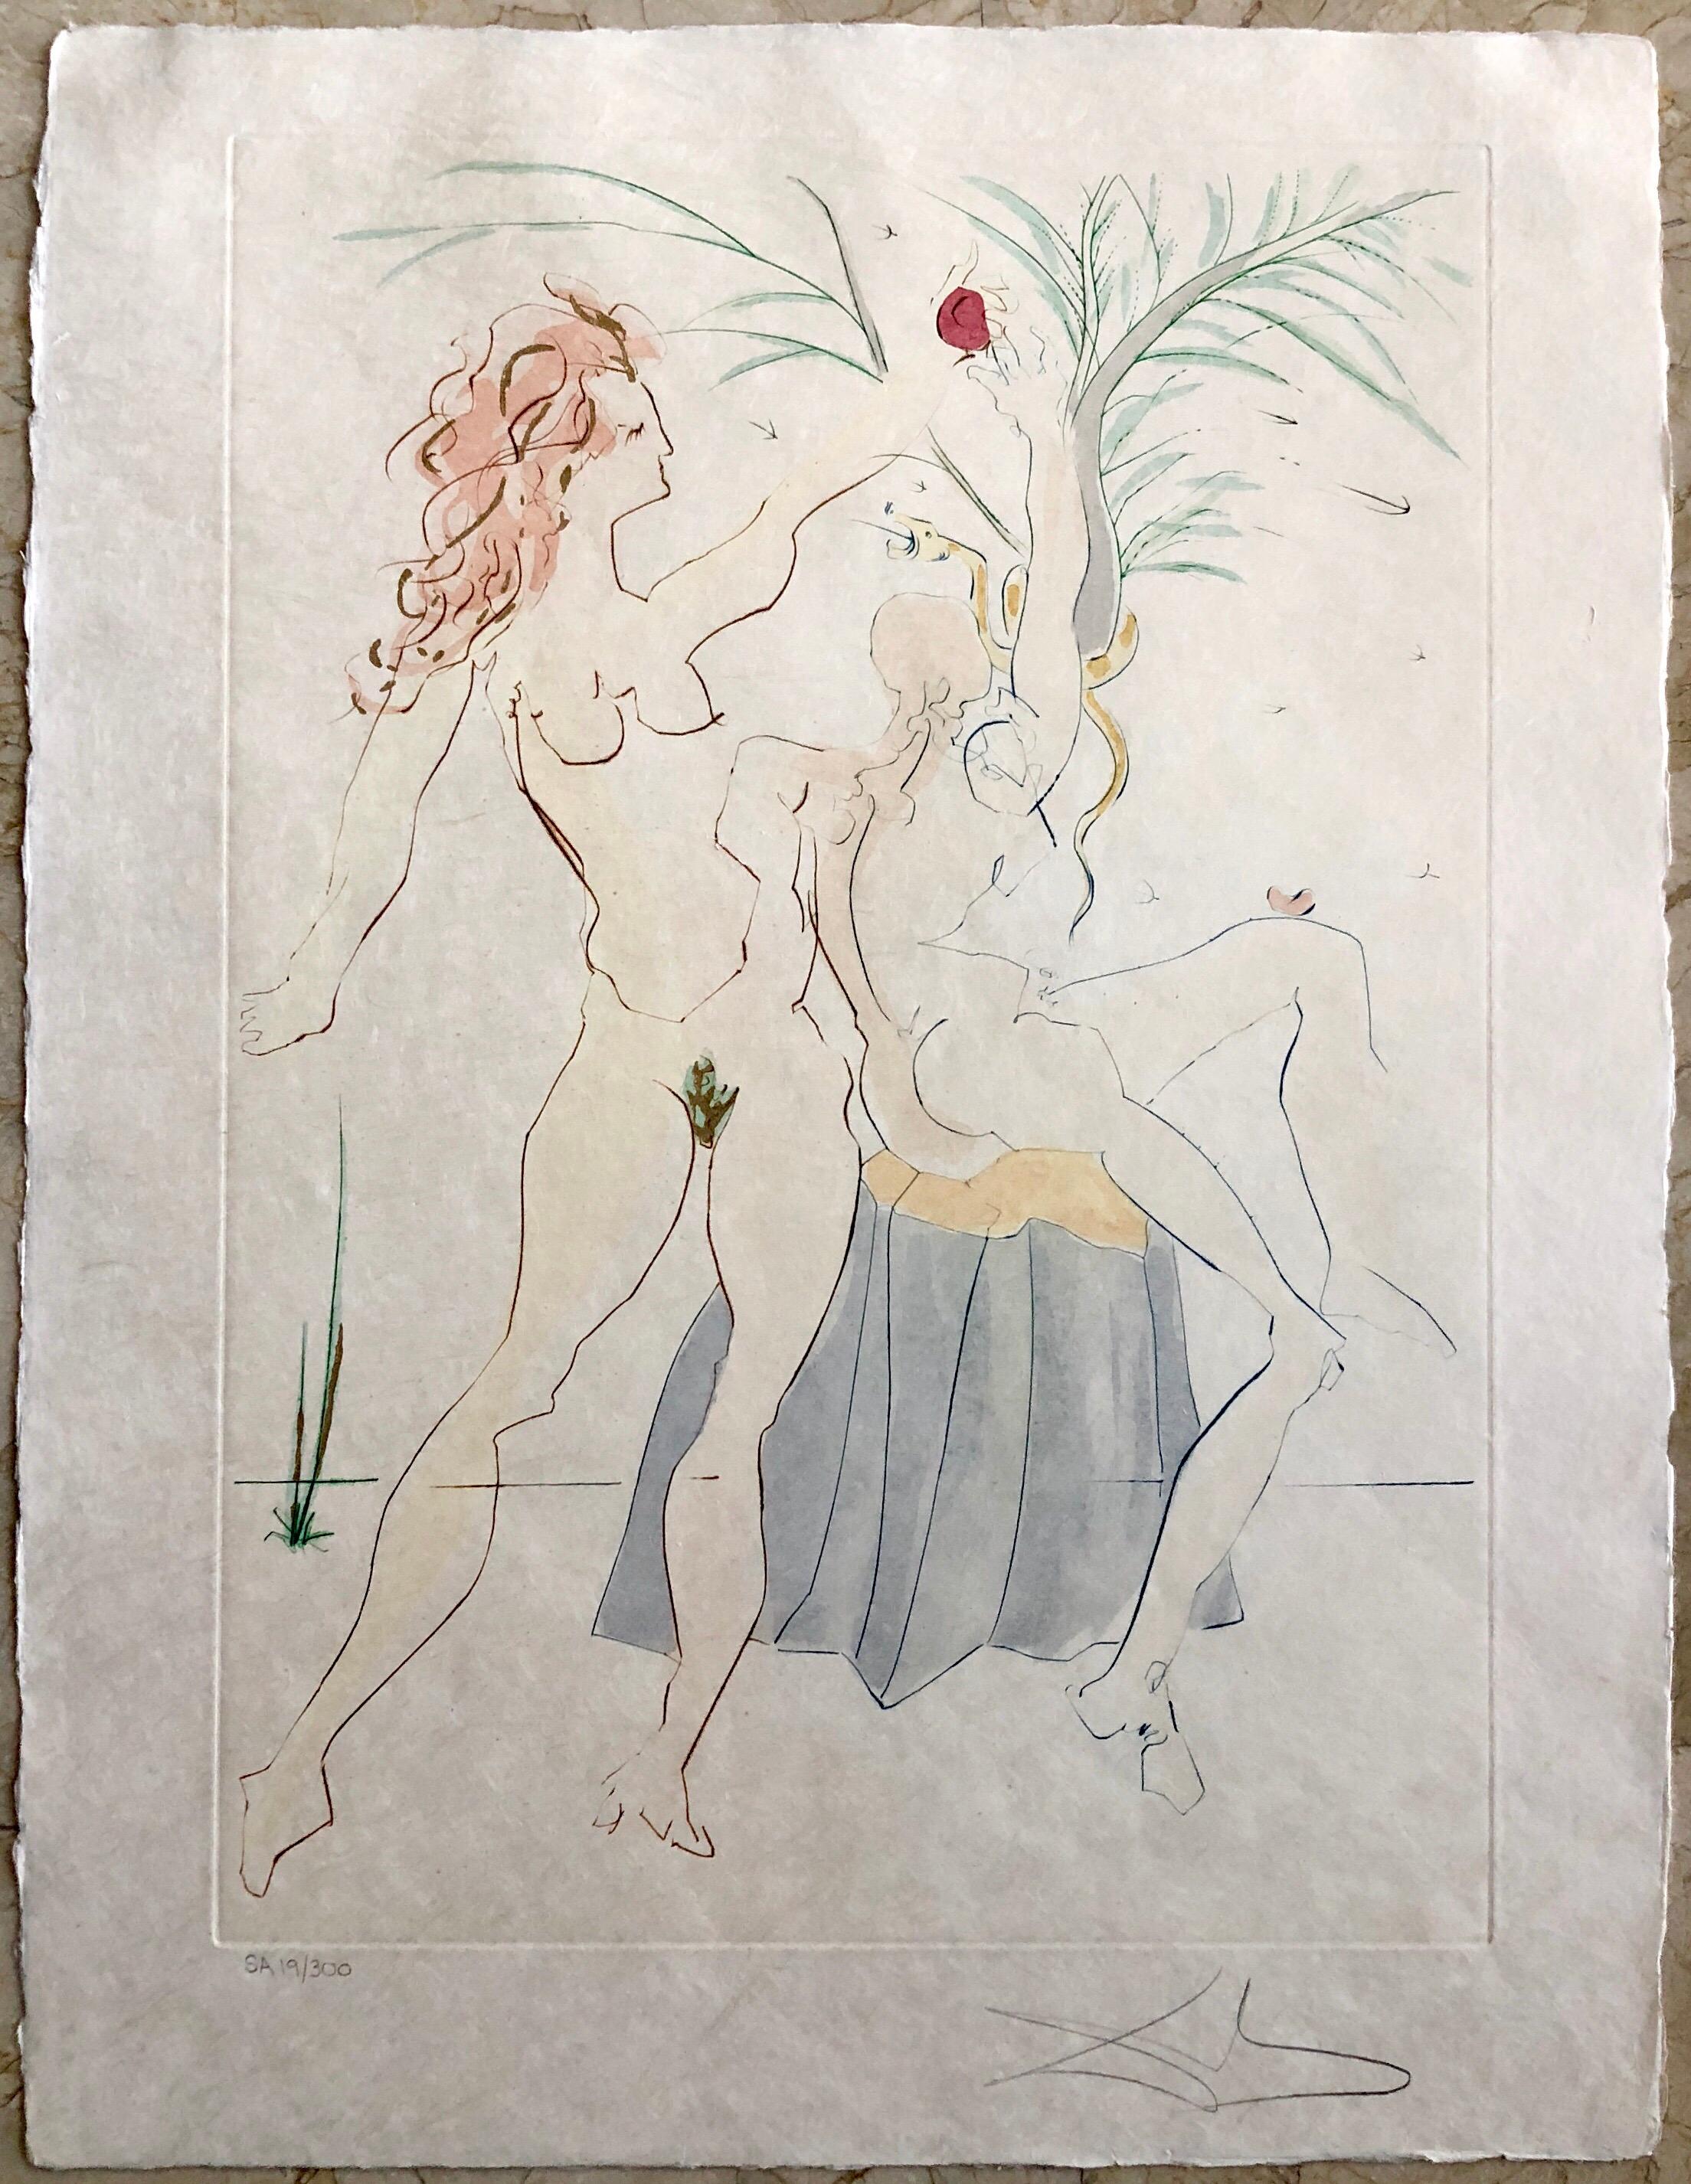 Salvador Dali Pochoir Etching Engraving Adam & Eve Japon Paper Gold Embellished - Surrealist Print by Salvador Dalí